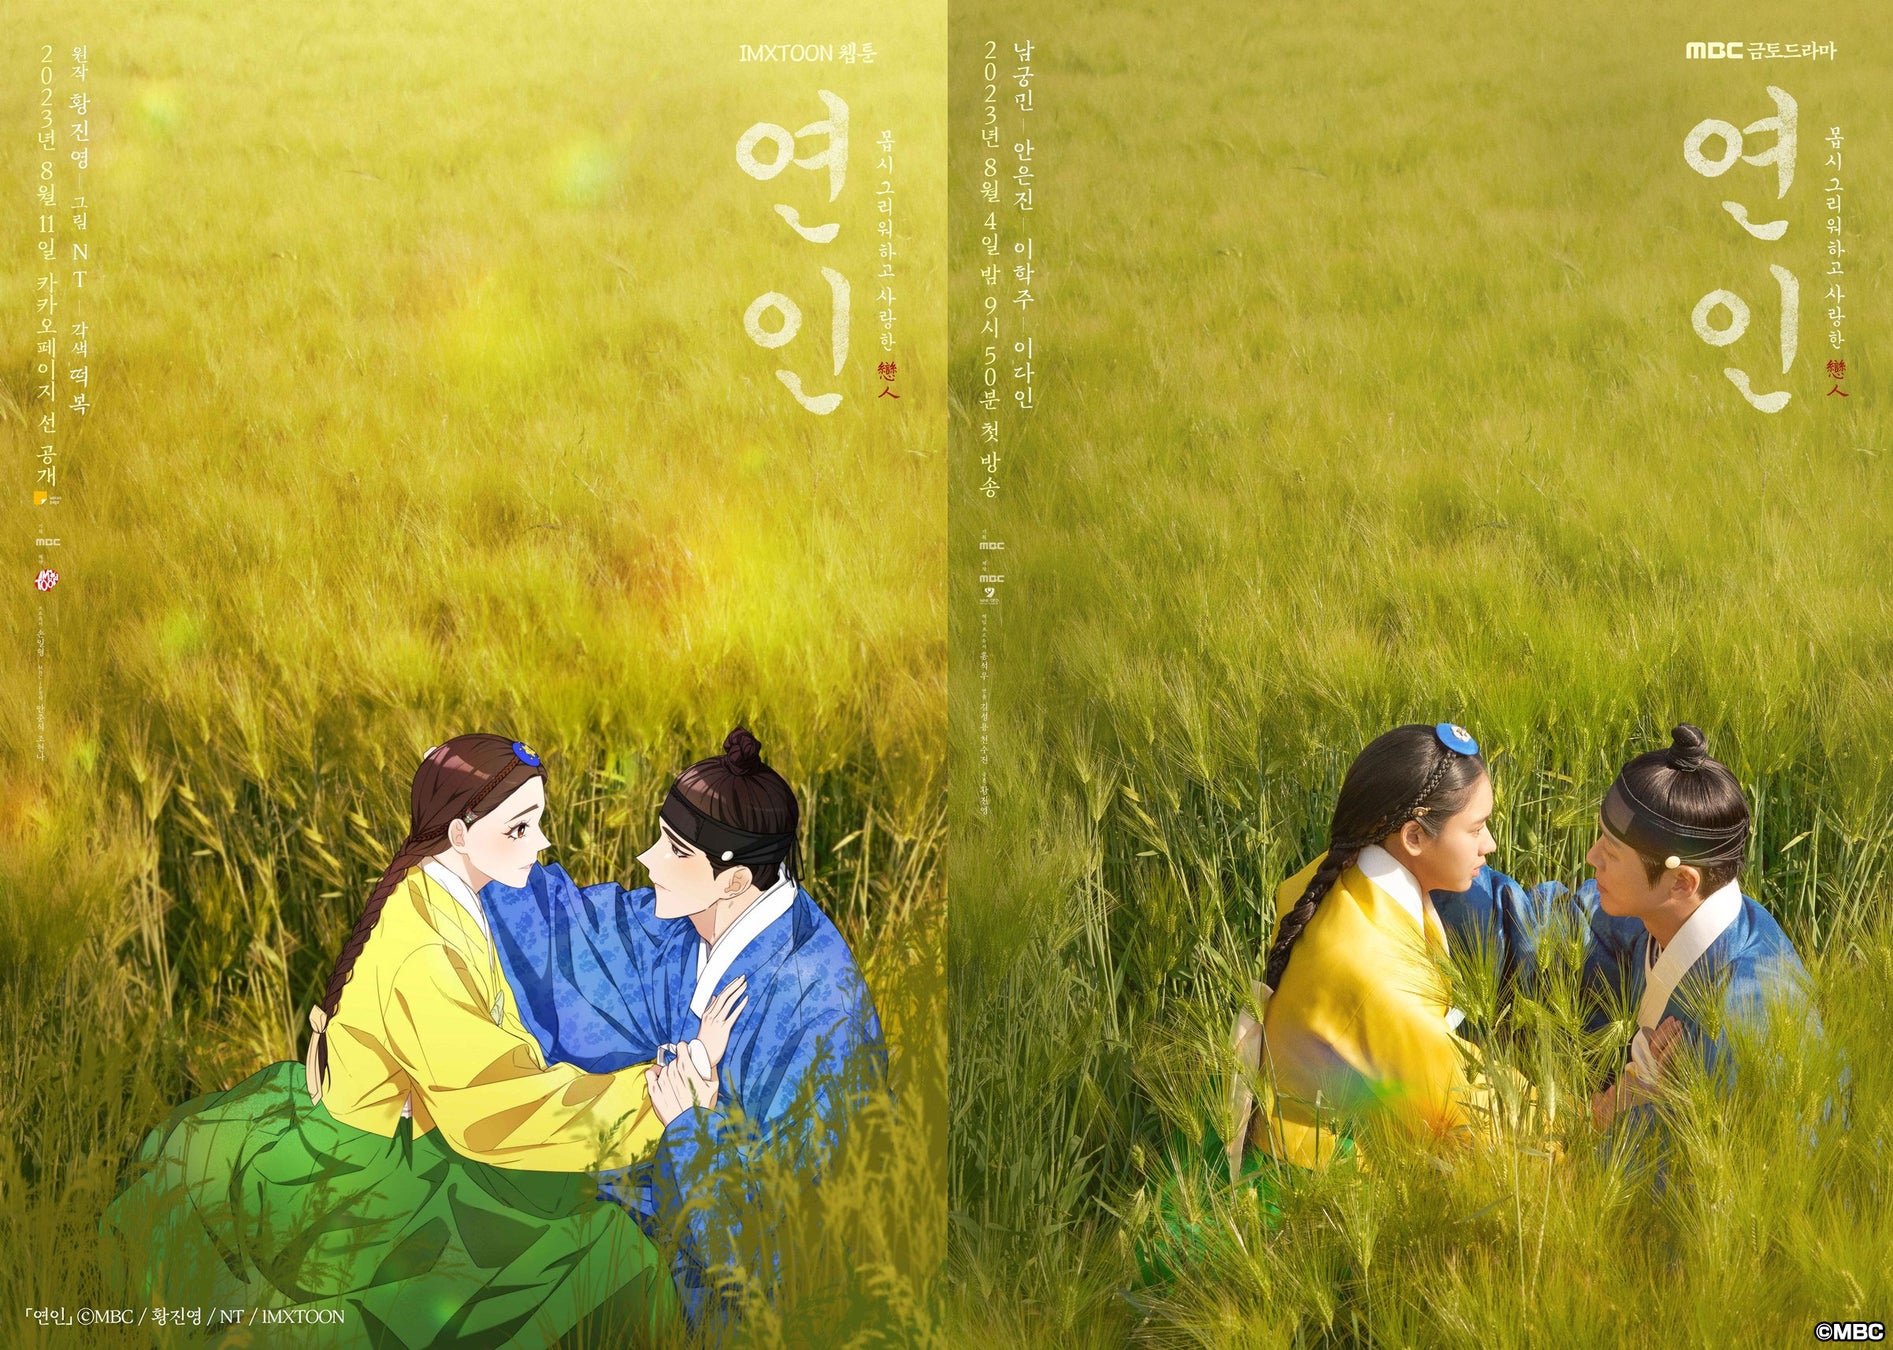 本日より韓国で放送開始の期待作！ナムグン・ミン主演の新ドラマ『恋人』(原題)がIMXプロデュースでWEBTOON化！